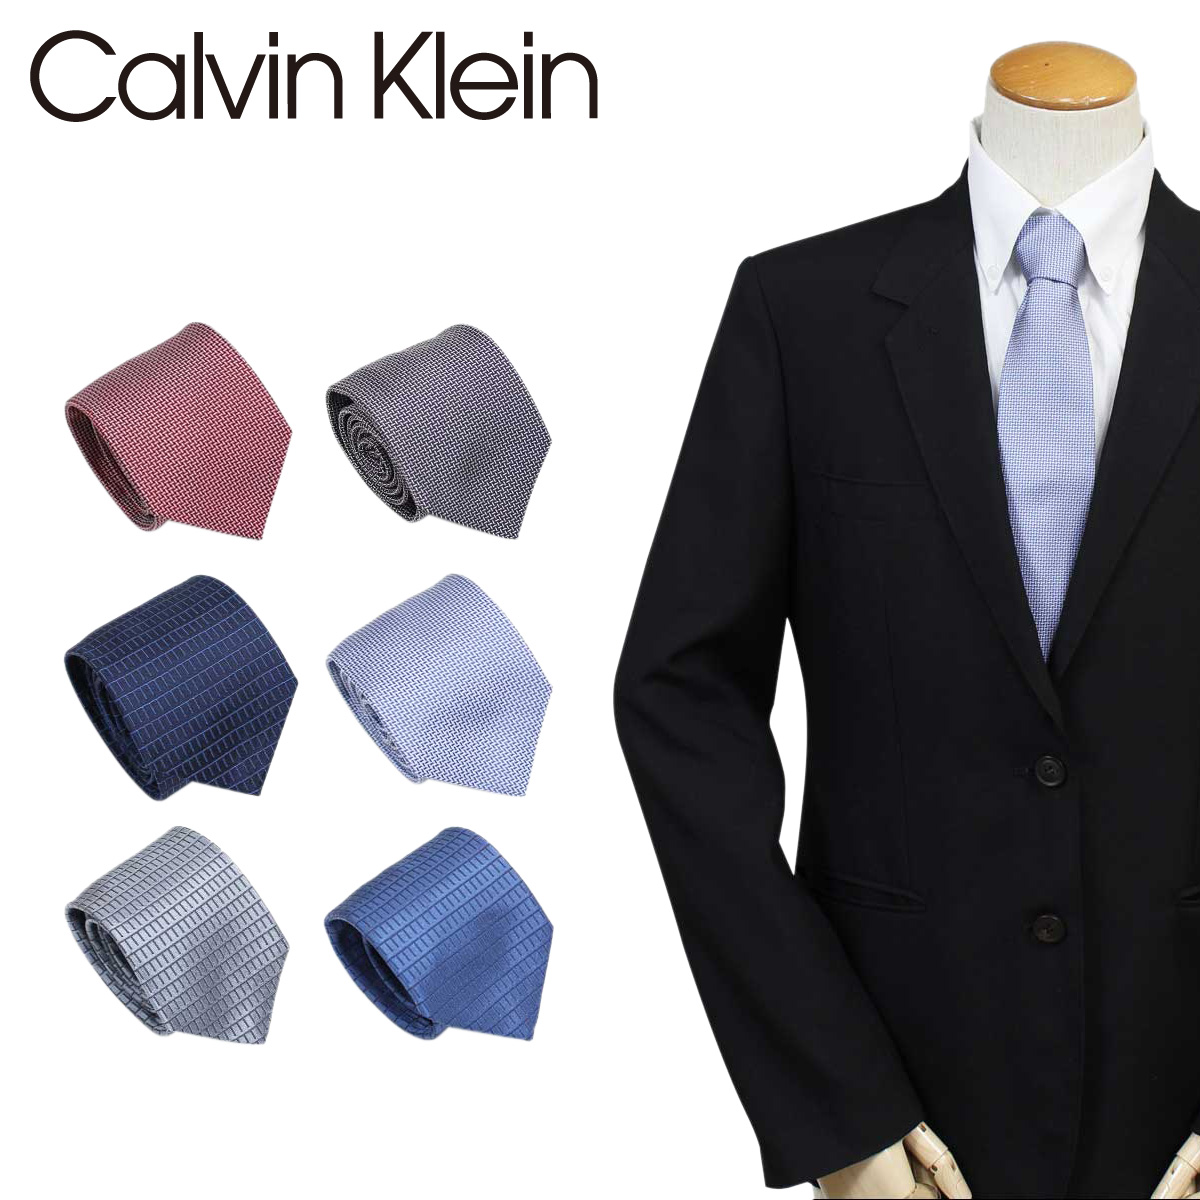 送料無料 あす楽対応 売買 カルバンクライン Calvin Klein ネクタイ メンズ 人気 おすすめ シルク 結婚式 ビジネス ブランド CK